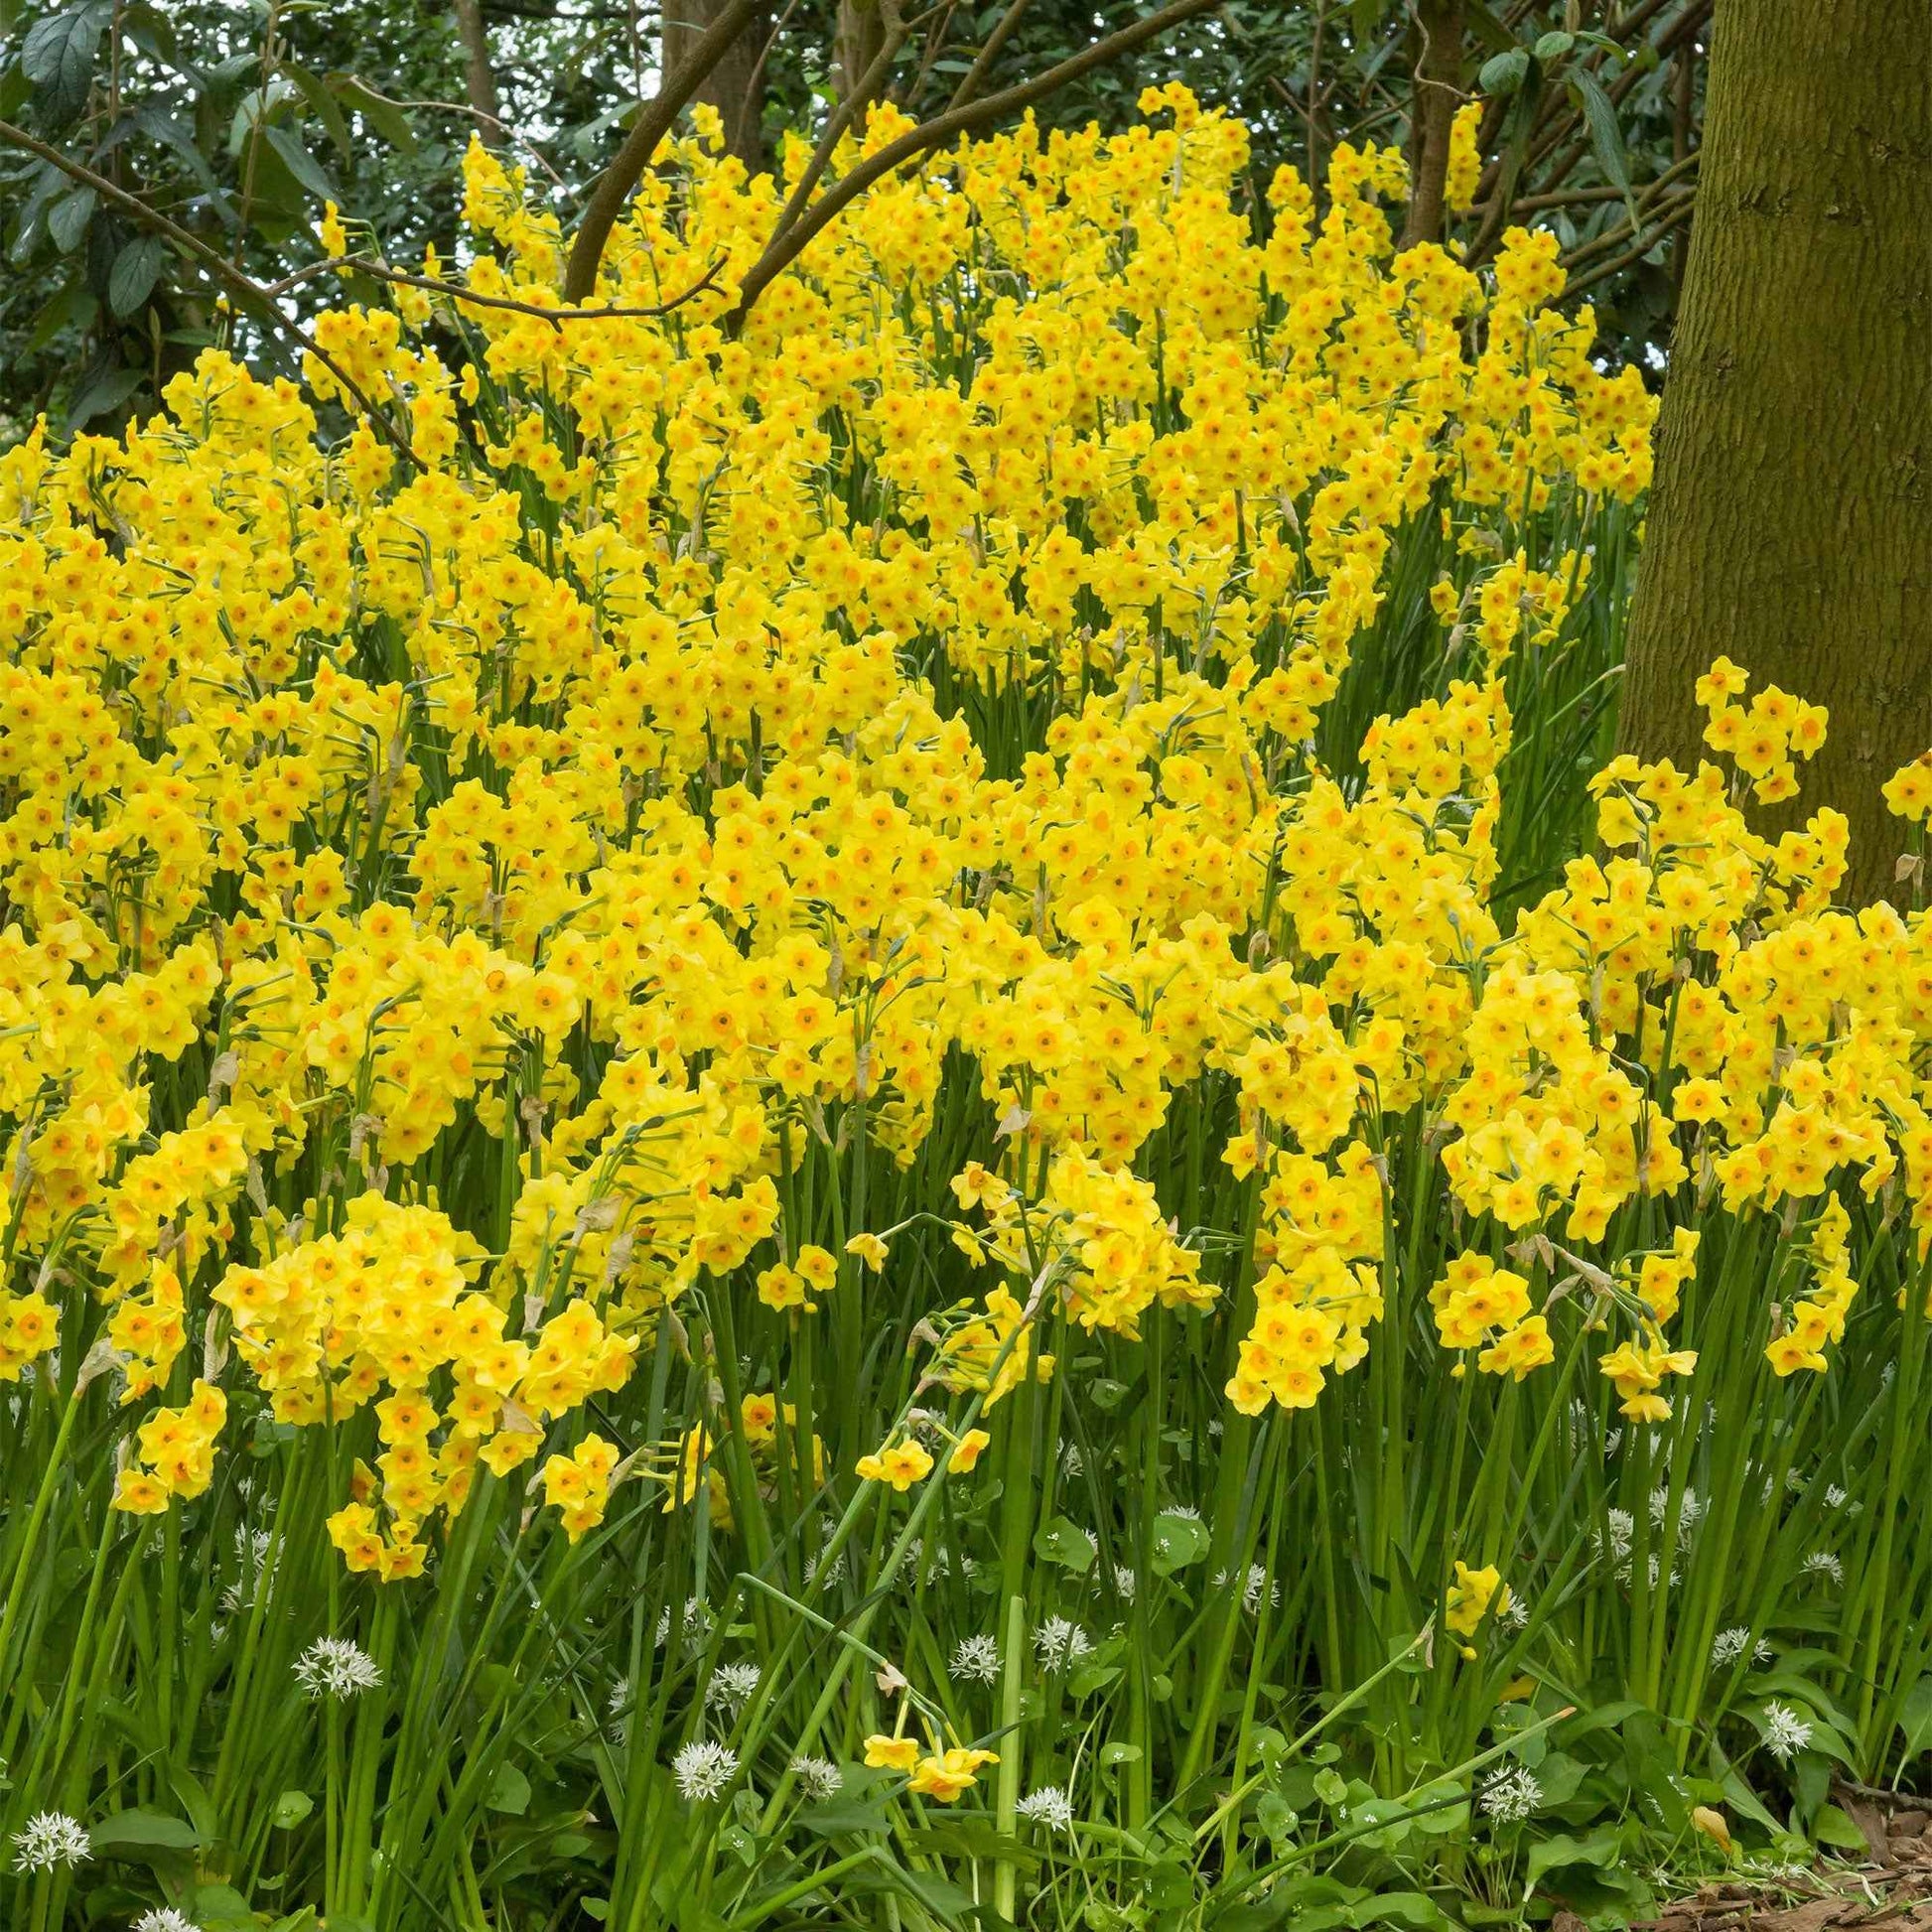 40x Narcisse Narcissus 'Martinette' petite fleur jaune - Bulbes de fleurs populaires